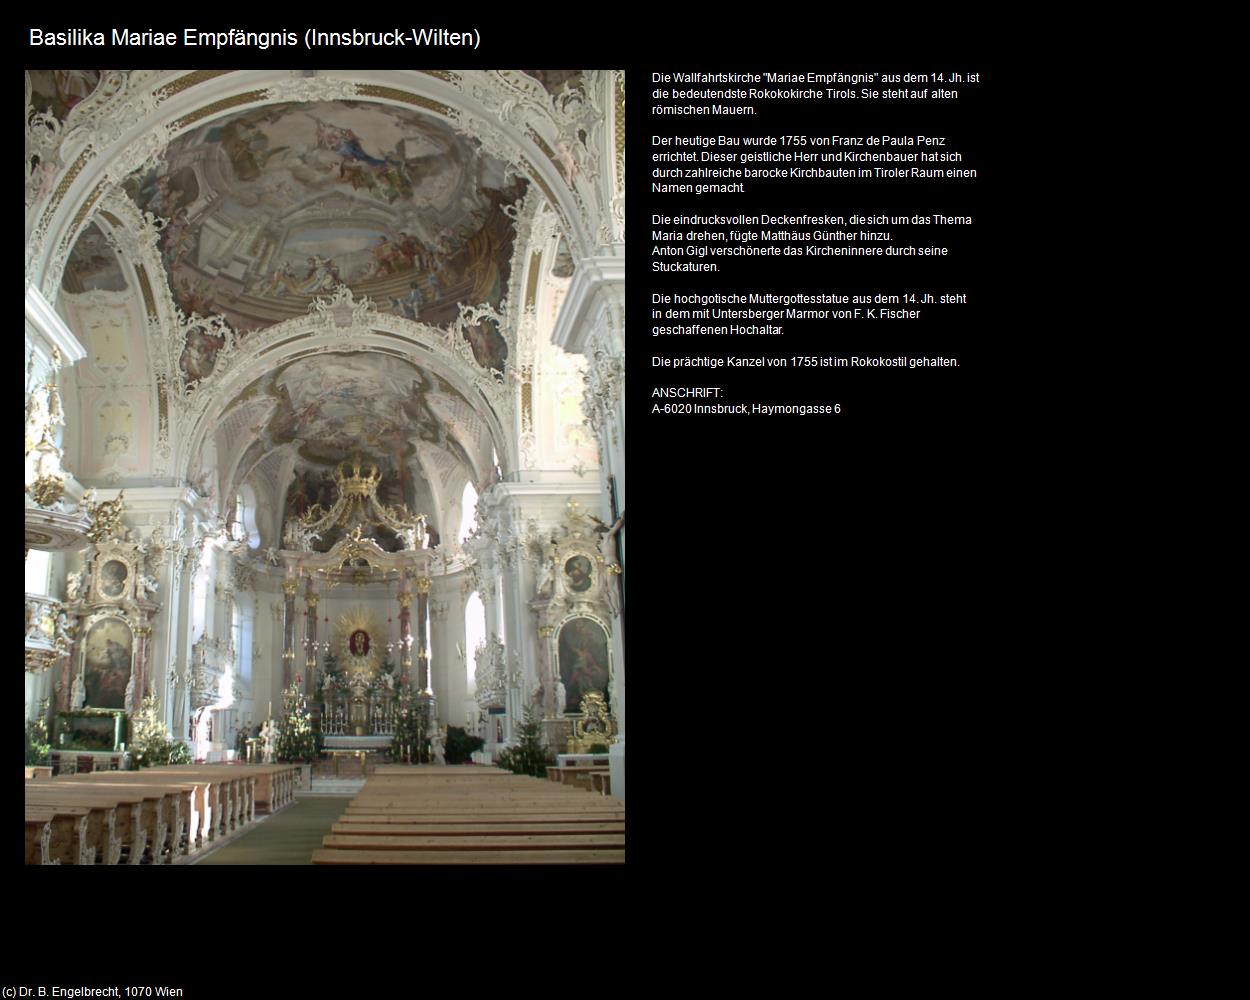 Basilika Mariae Empfängnis (Wilten) (Innsbruck) in Kulturatlas-TIROL